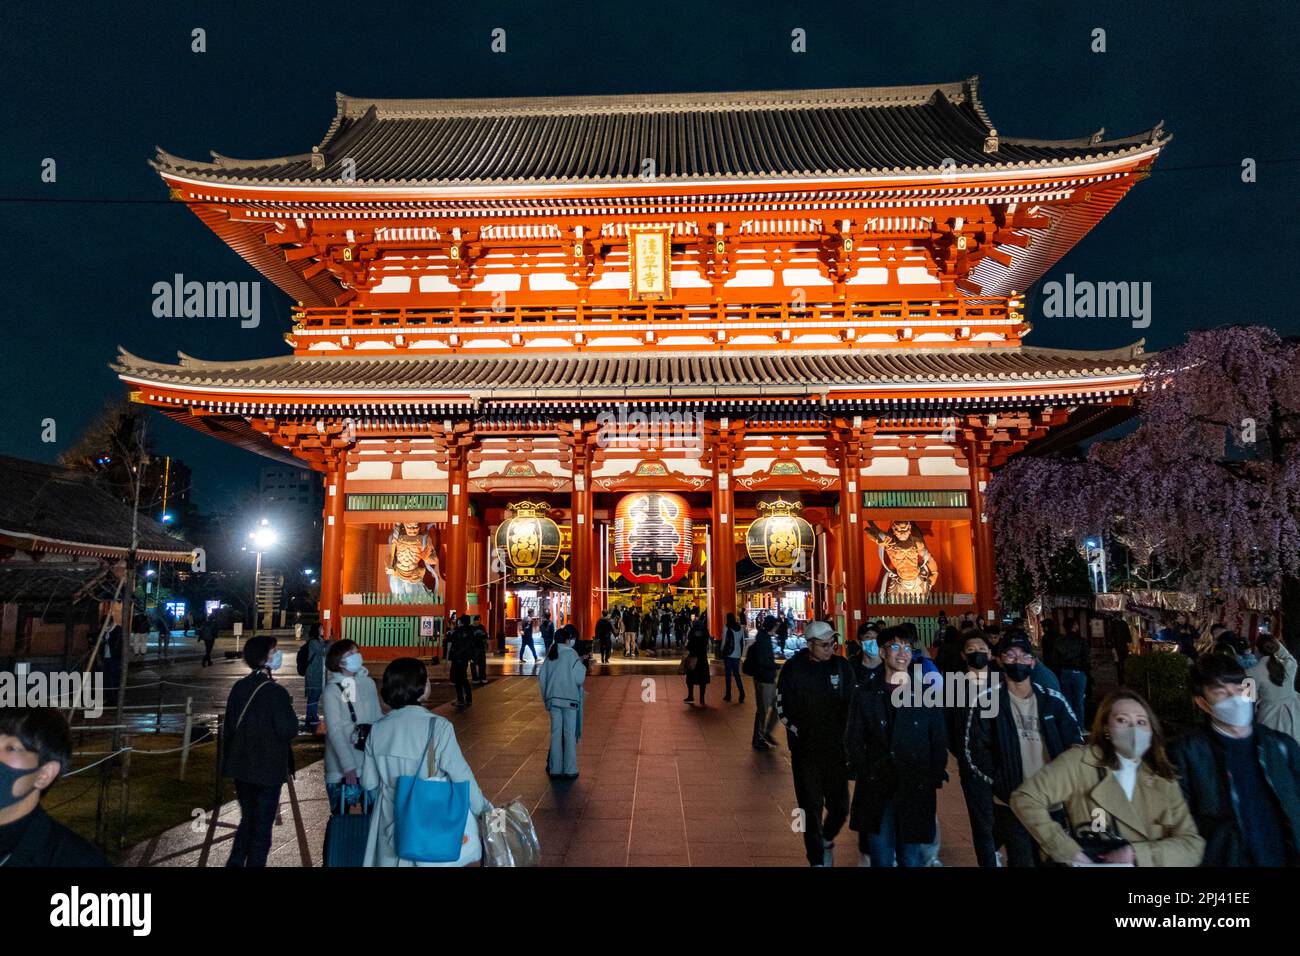 Vue nocturne du temple Sensoji à Asakusa, Tokyo, Japon Banque D'Images